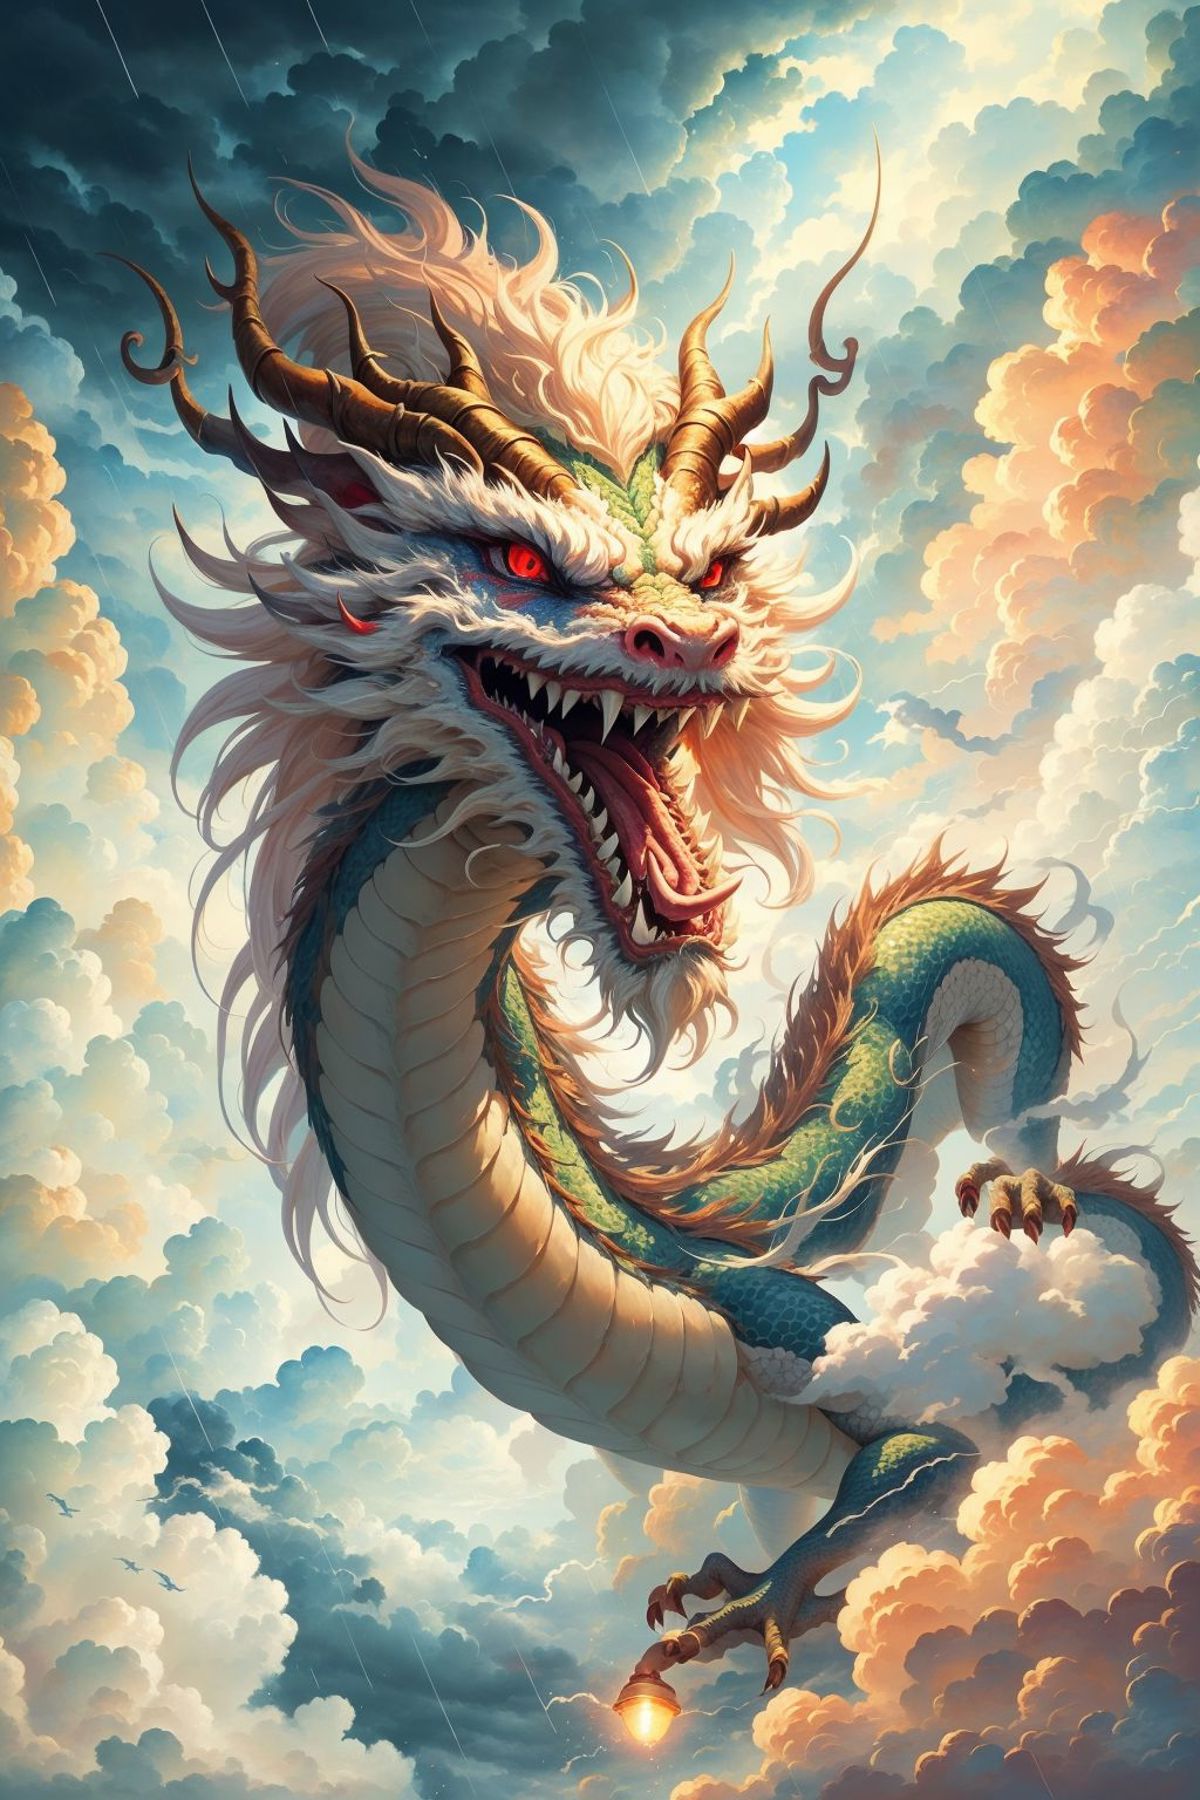 东方巨龙 Oriental giant dragon image by ChaosOrchestrator